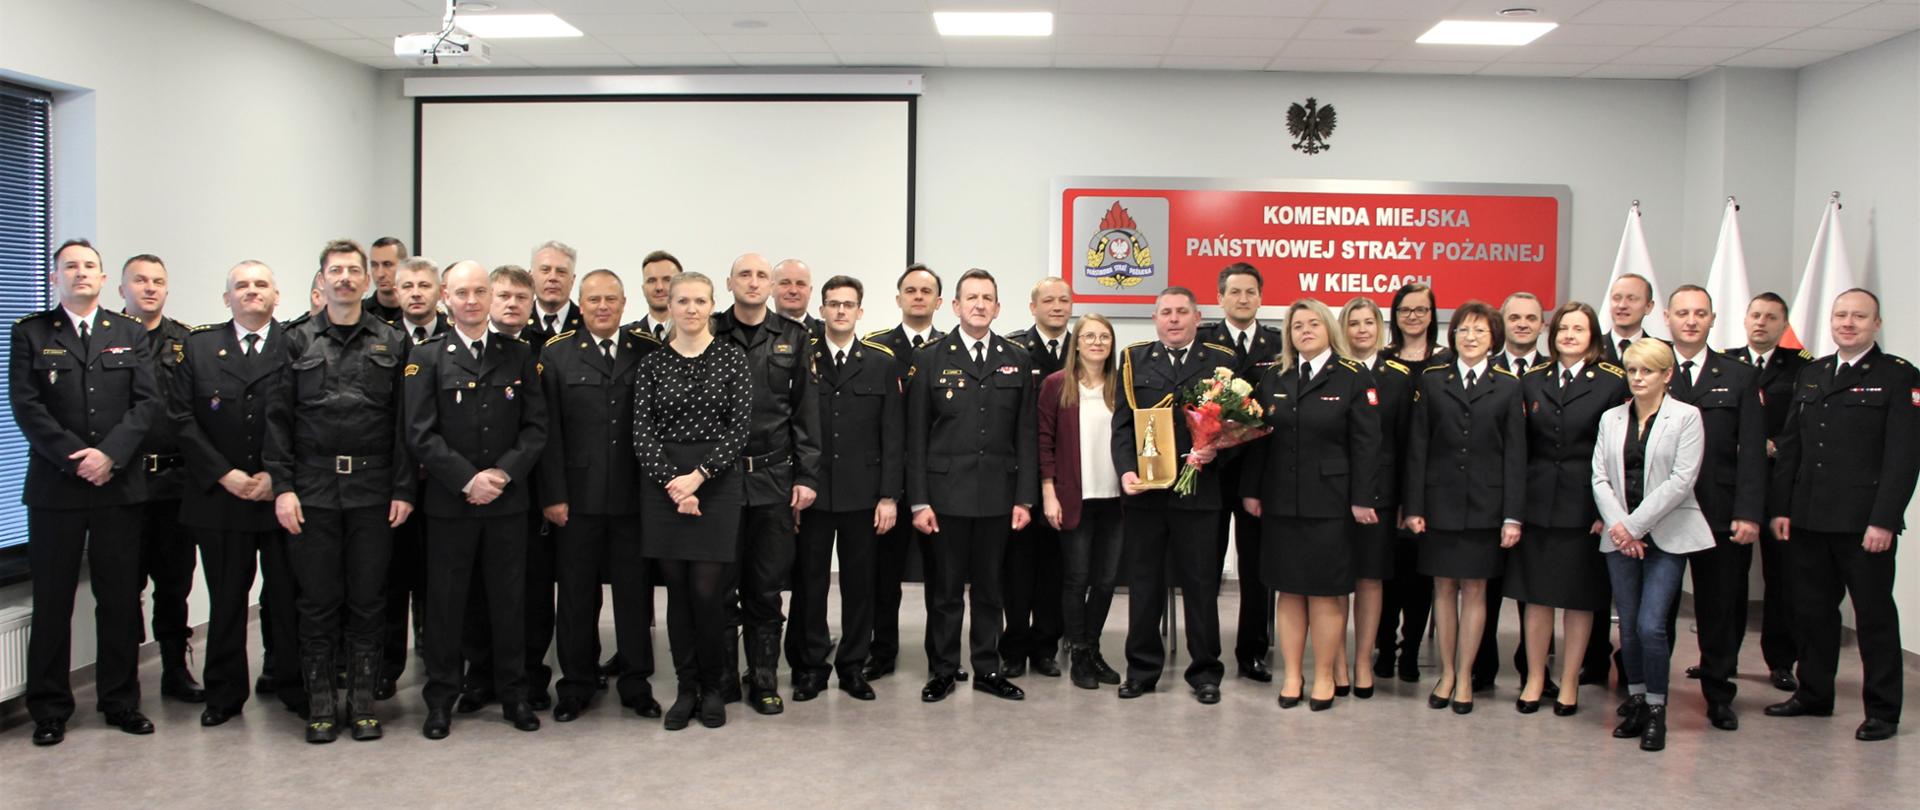 Zdjęcie pamiątkowe: wszyscy obecni na uroczystości funkcjonariusze i pracownicy Komendy Miejskiej Państwowej Straży Pożarnej w Kielcach będący na uroczystości ustawieni do zdjęcia pamiątkowego.